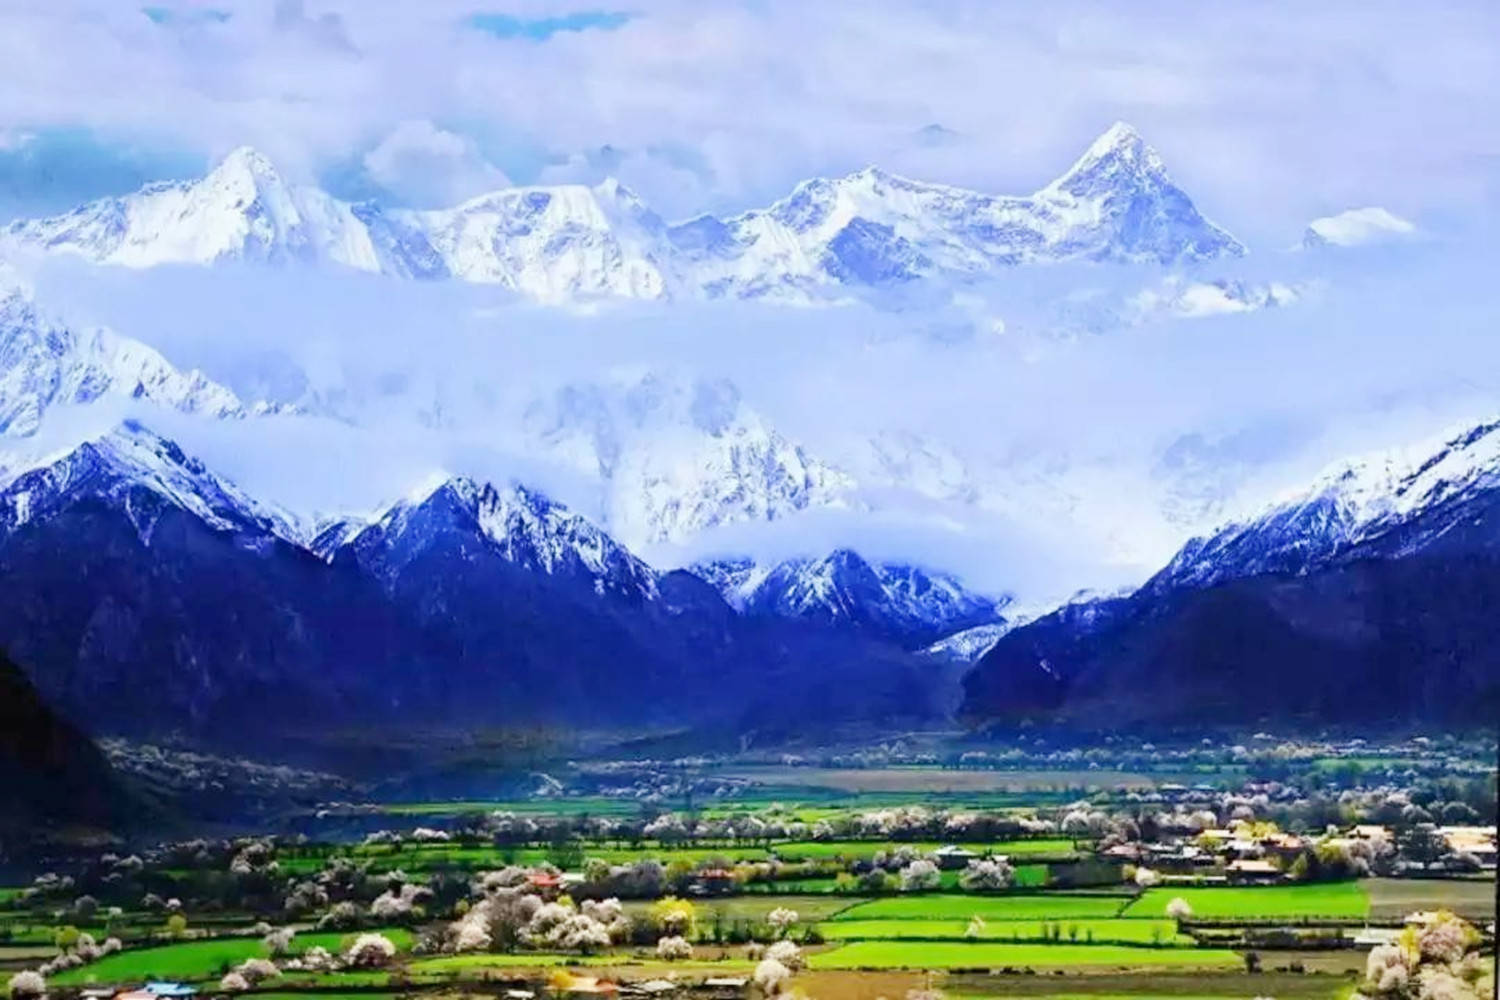 自驾游爱好者向往的地方—西藏,它有多少雪山景点?一起看一看